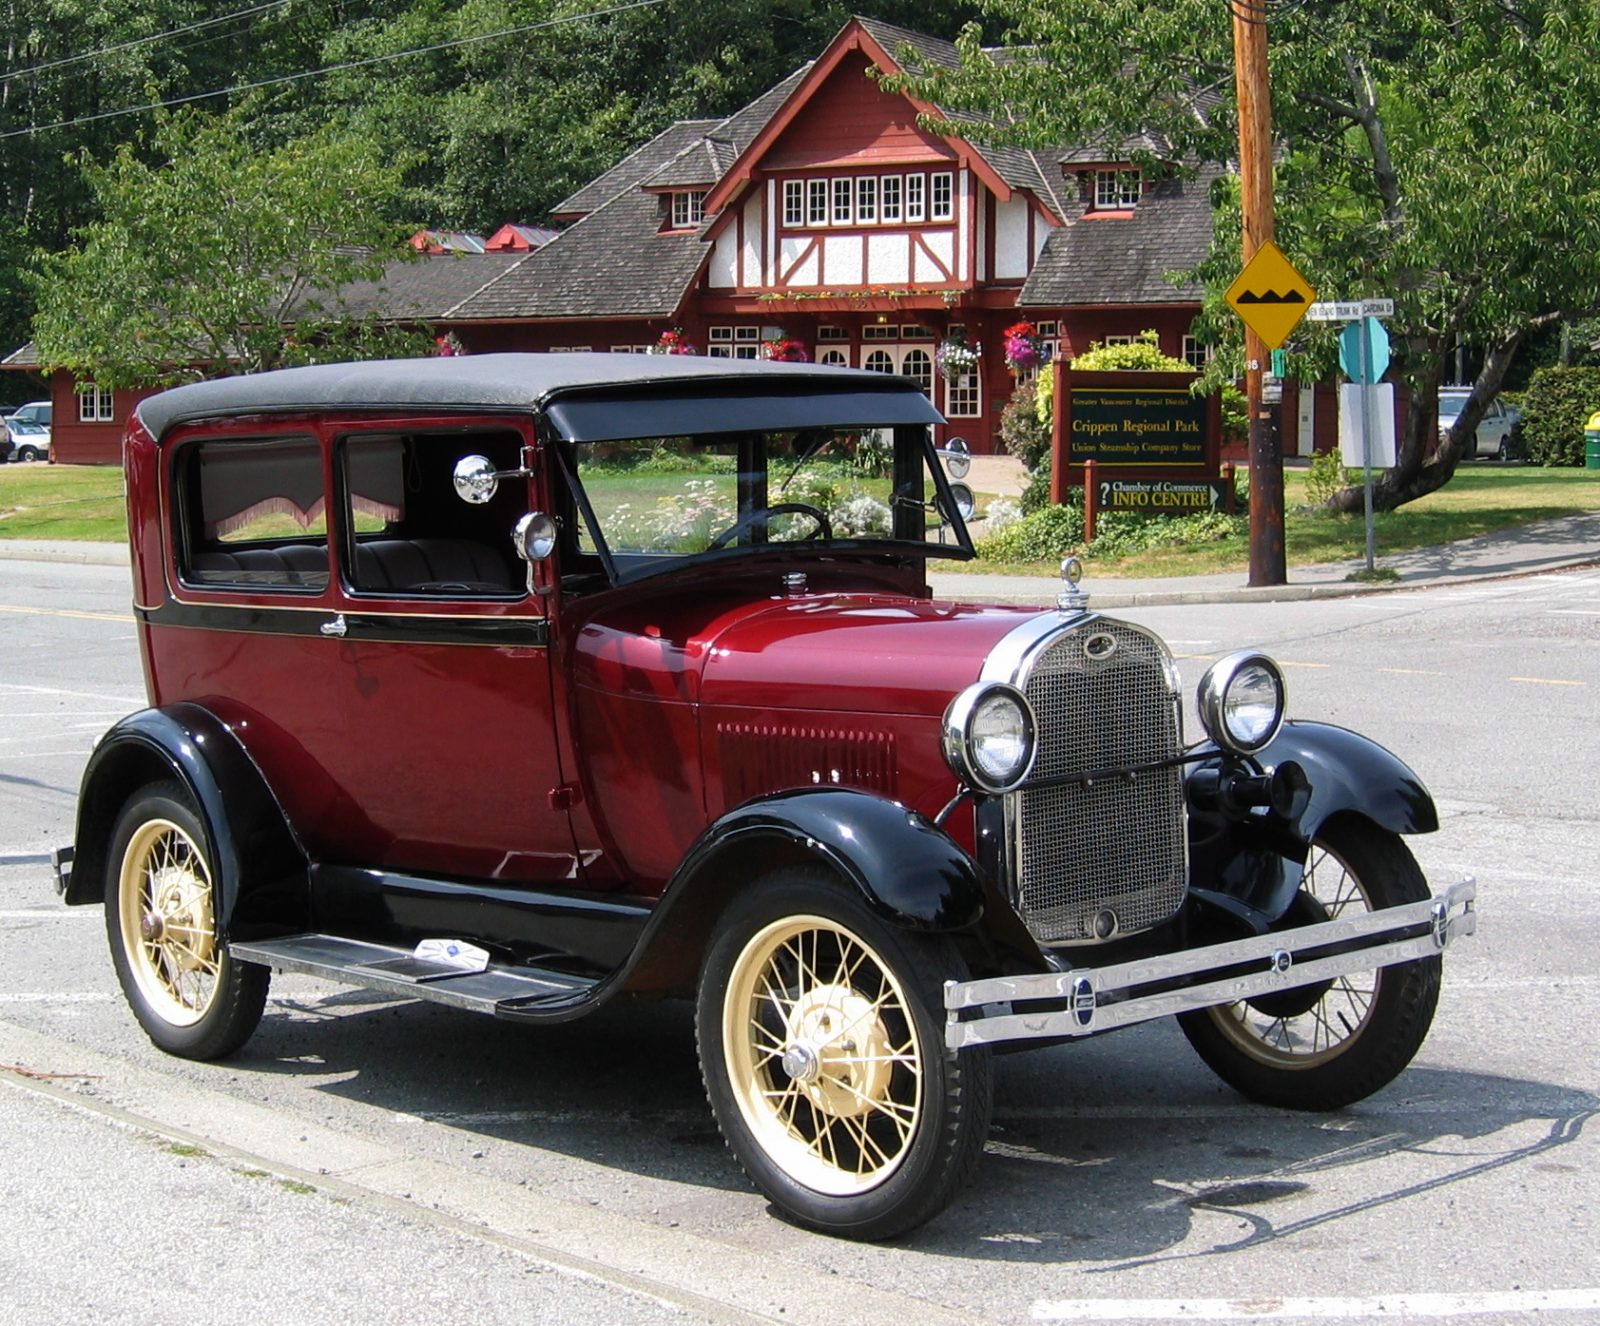 26 novembre 1927 – Ford introduit le Modèle A